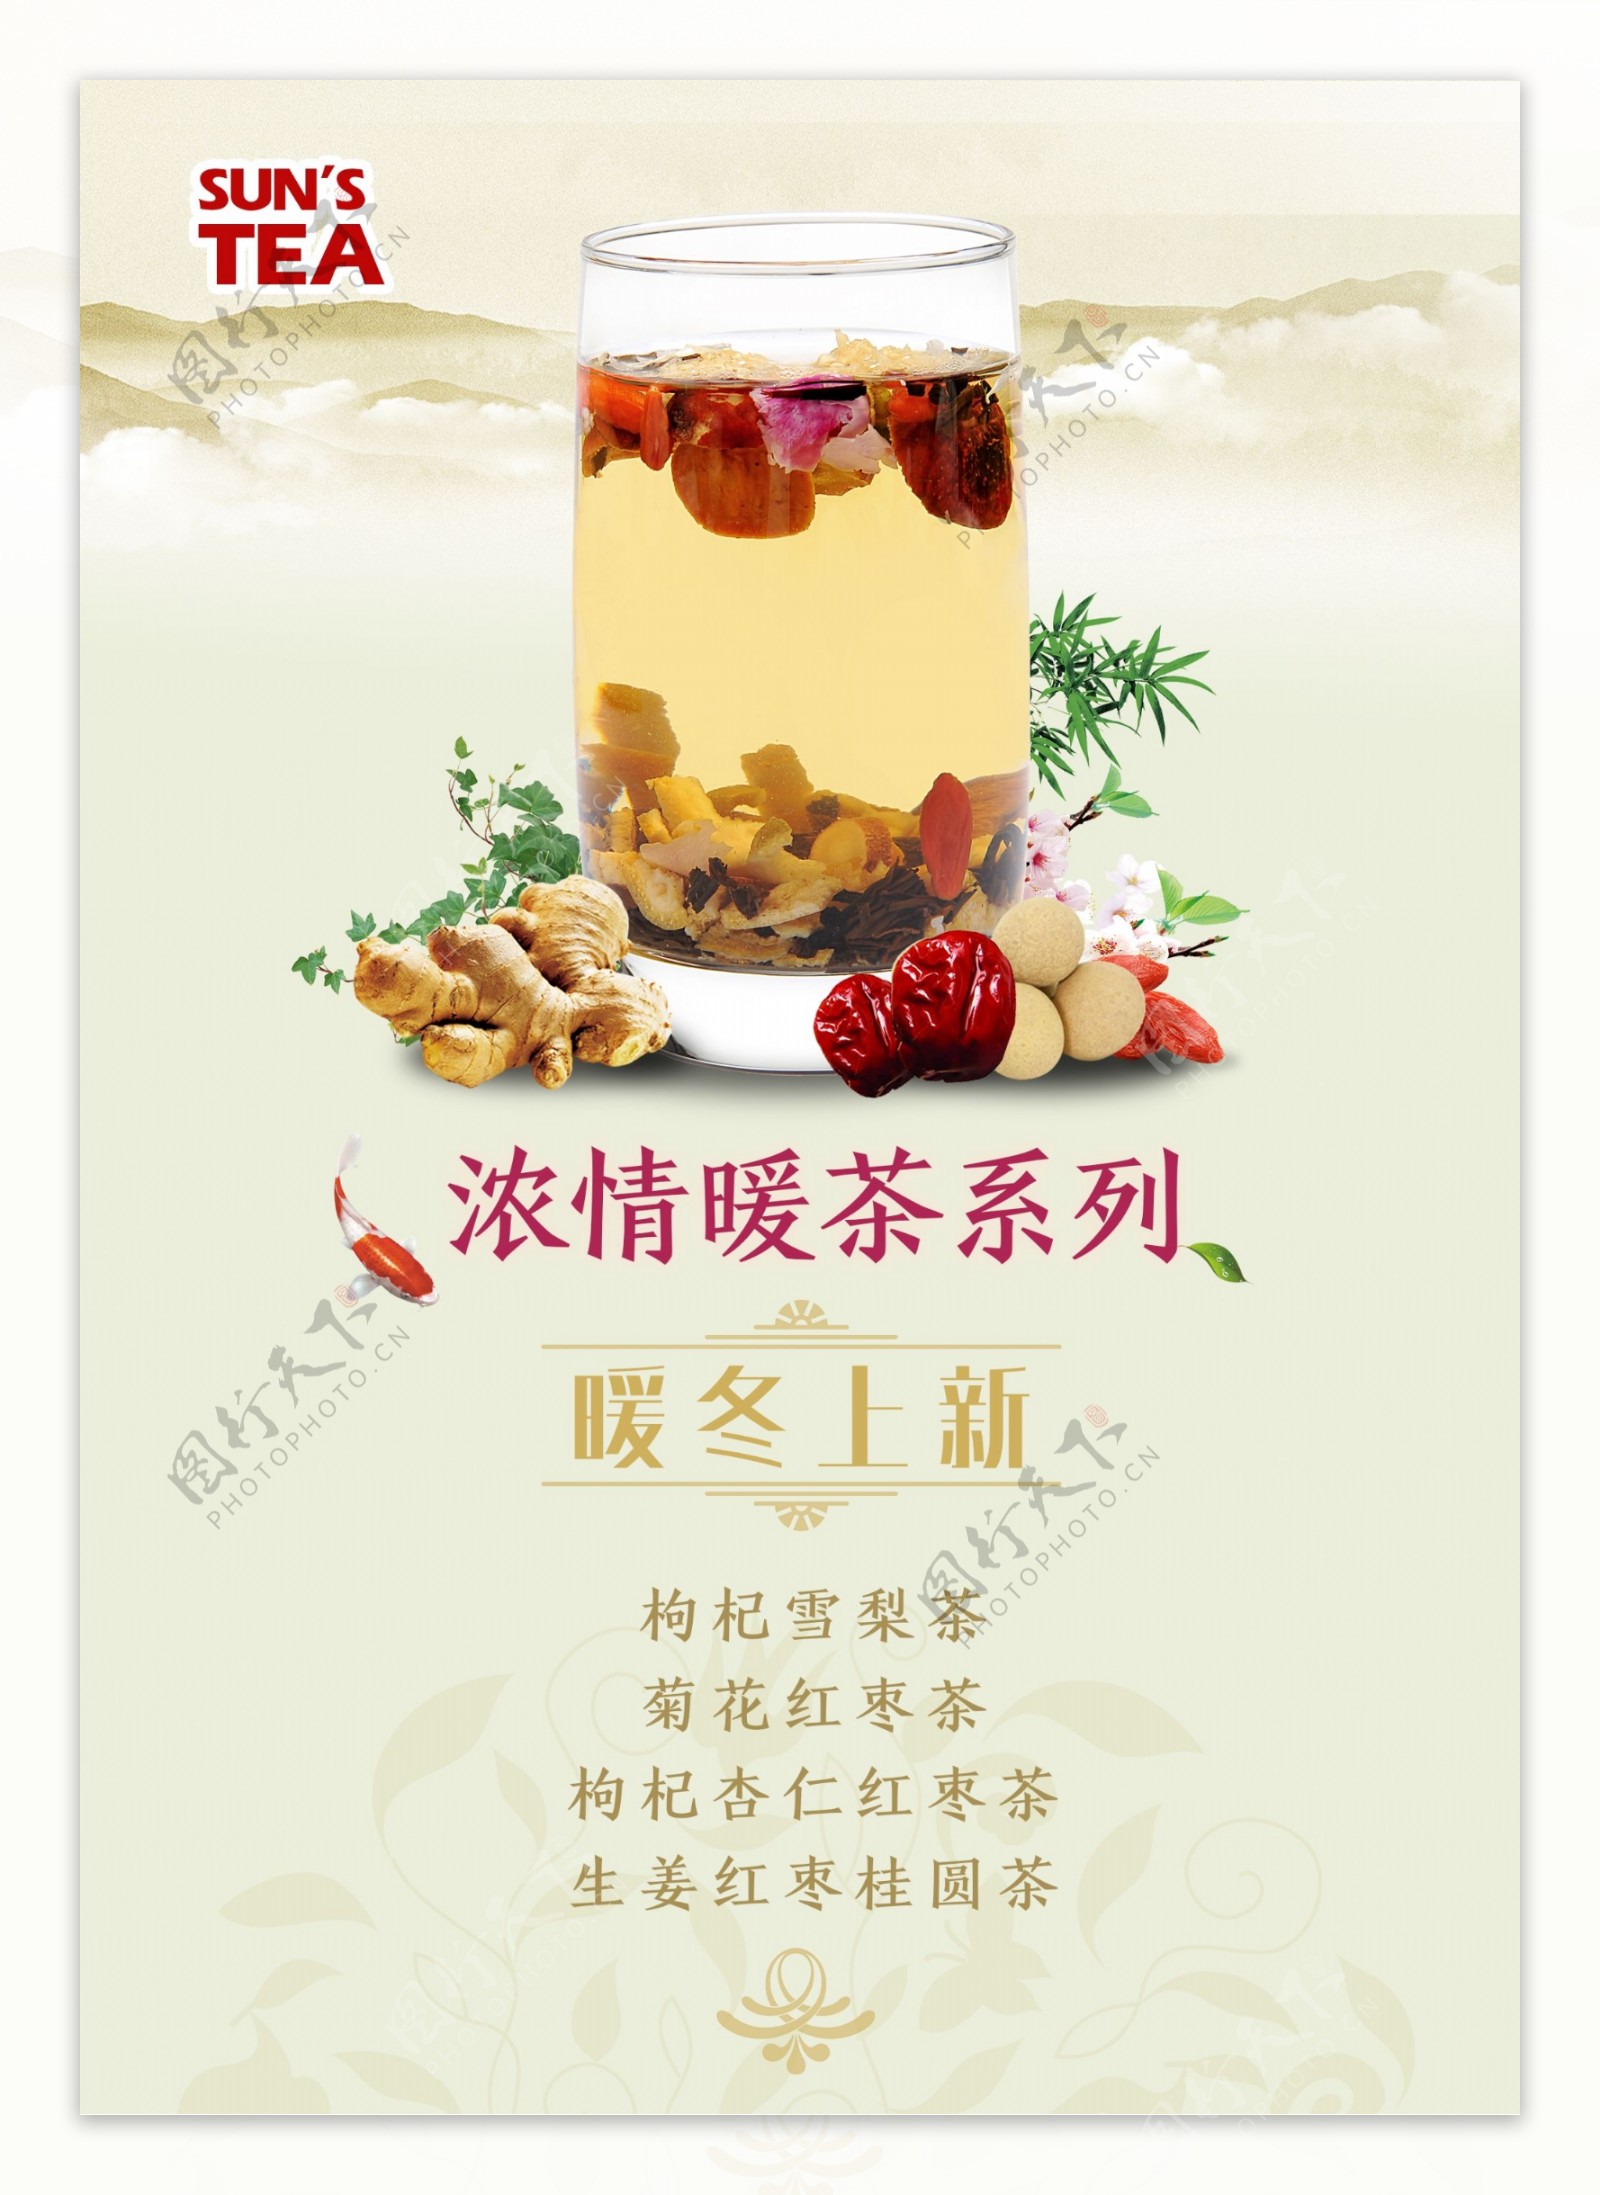 中国风冬季暖茶饮品海报传单下午茶海报